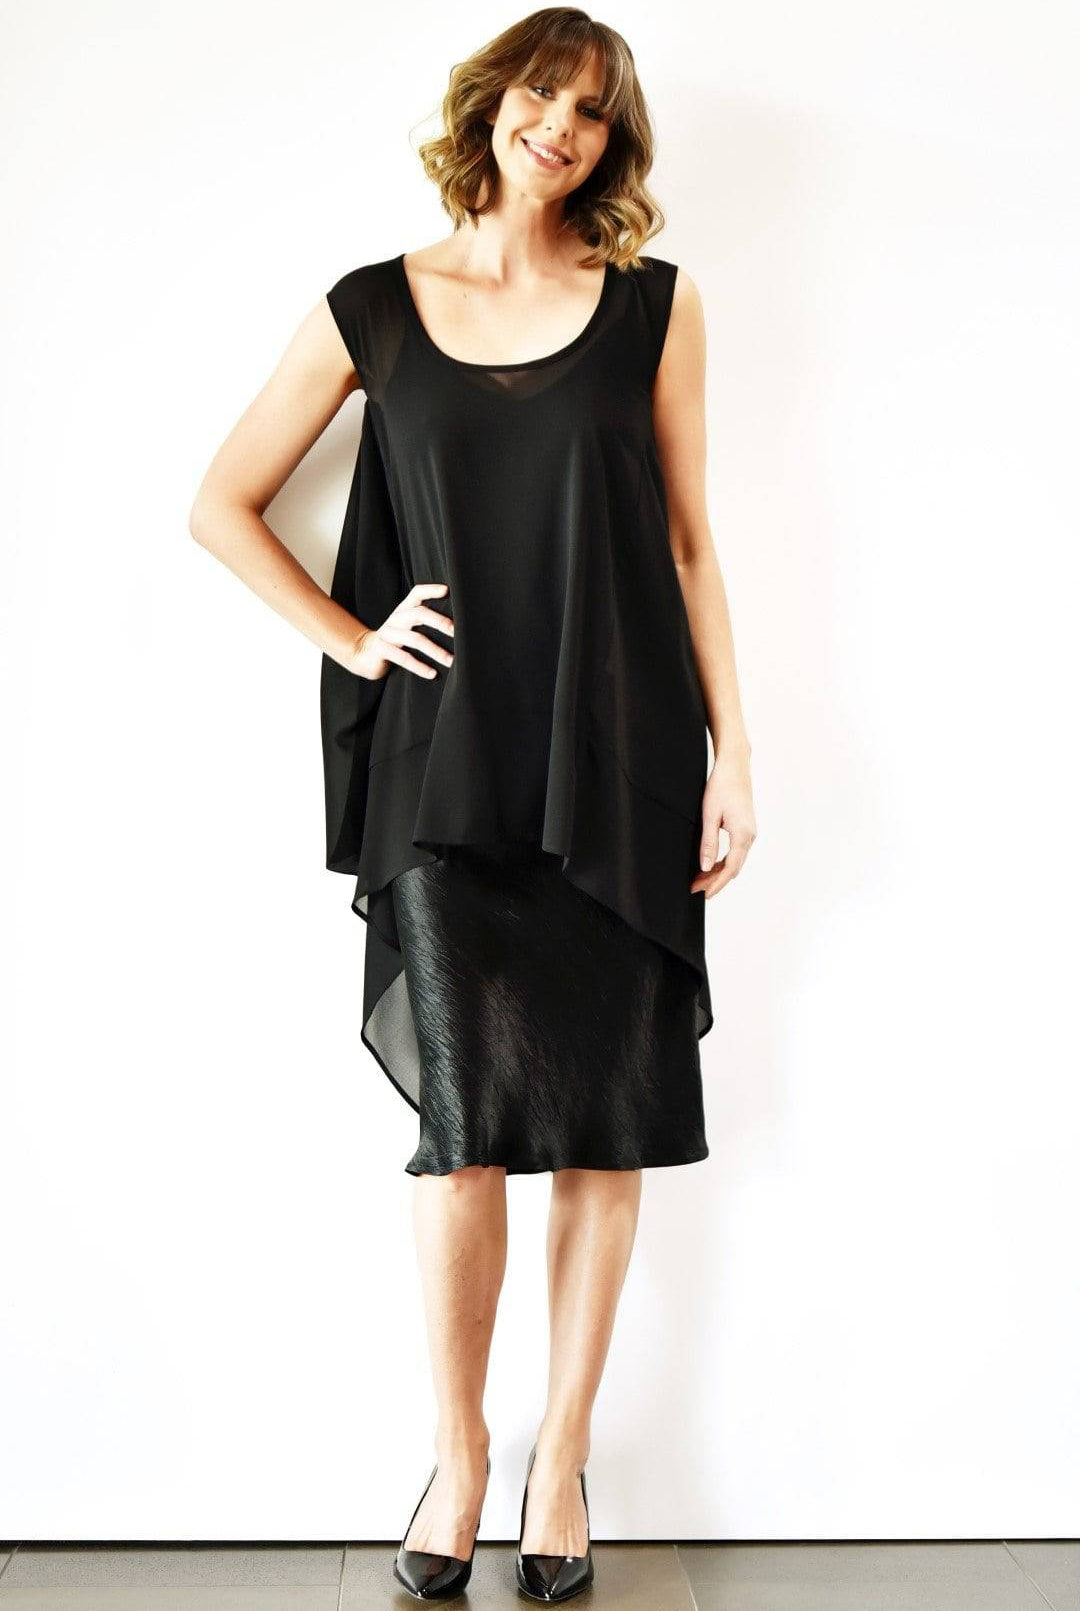 SHJARK Sardinia Slip Dress - Black - Magpie Style